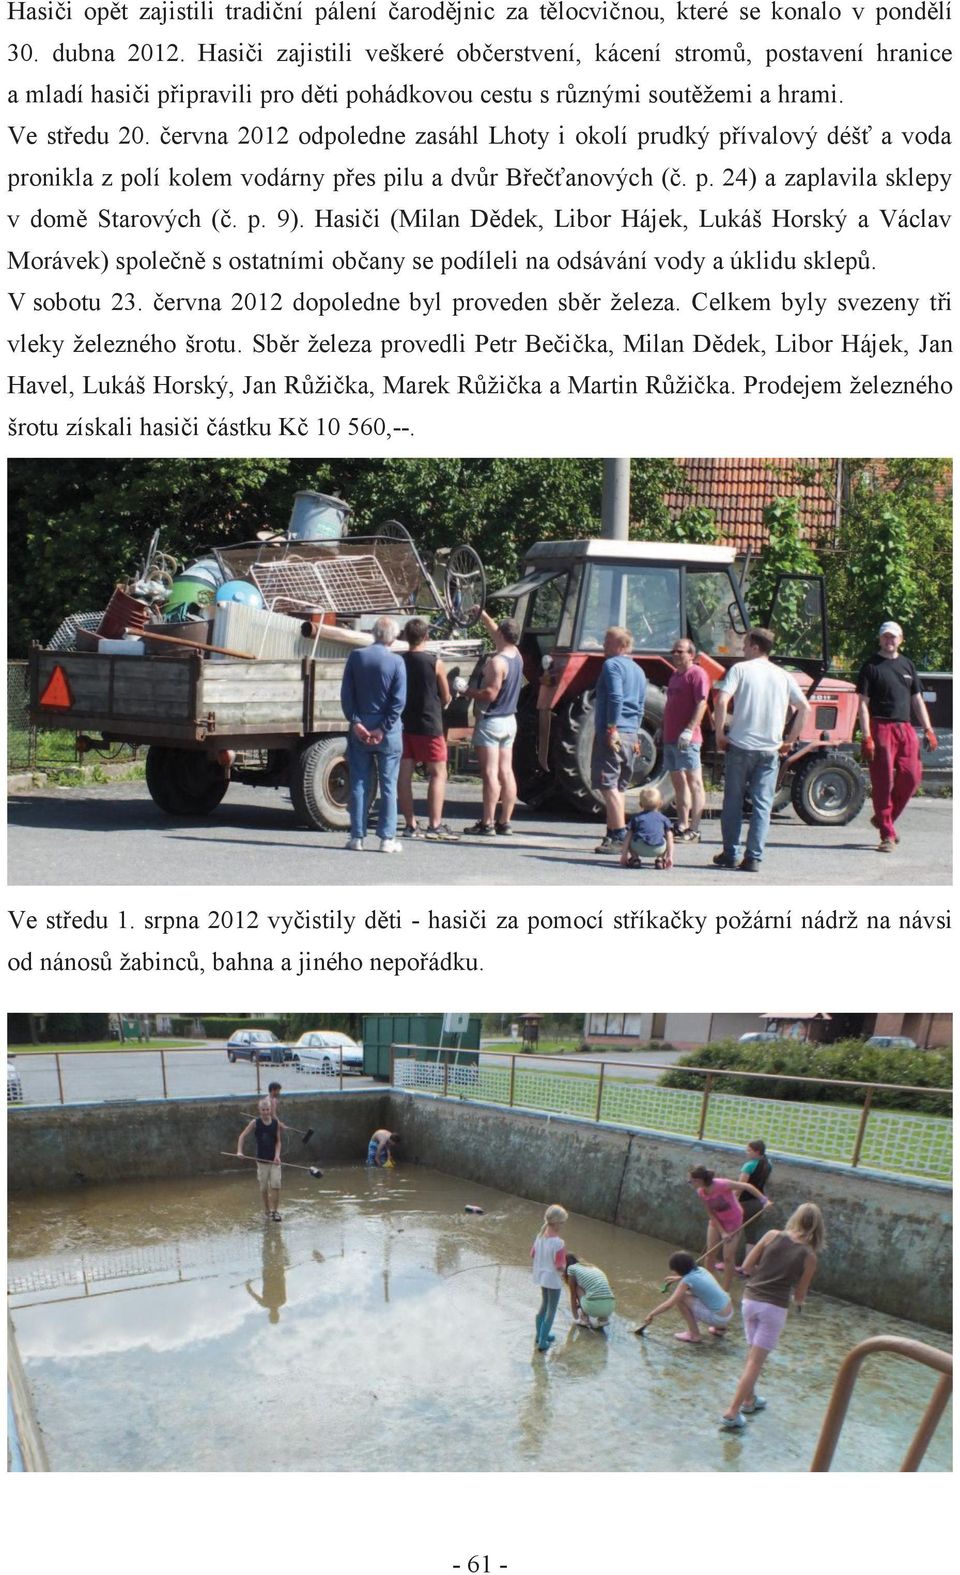 června 2012 odpoledne zasáhl Lhoty i okolí prudký přívalový déšť a voda pronikla z polí kolem vodárny přes pilu a dvůr Břečťanových (č. p. 24) a zaplavila sklepy v domě Starových (č. p. 9).